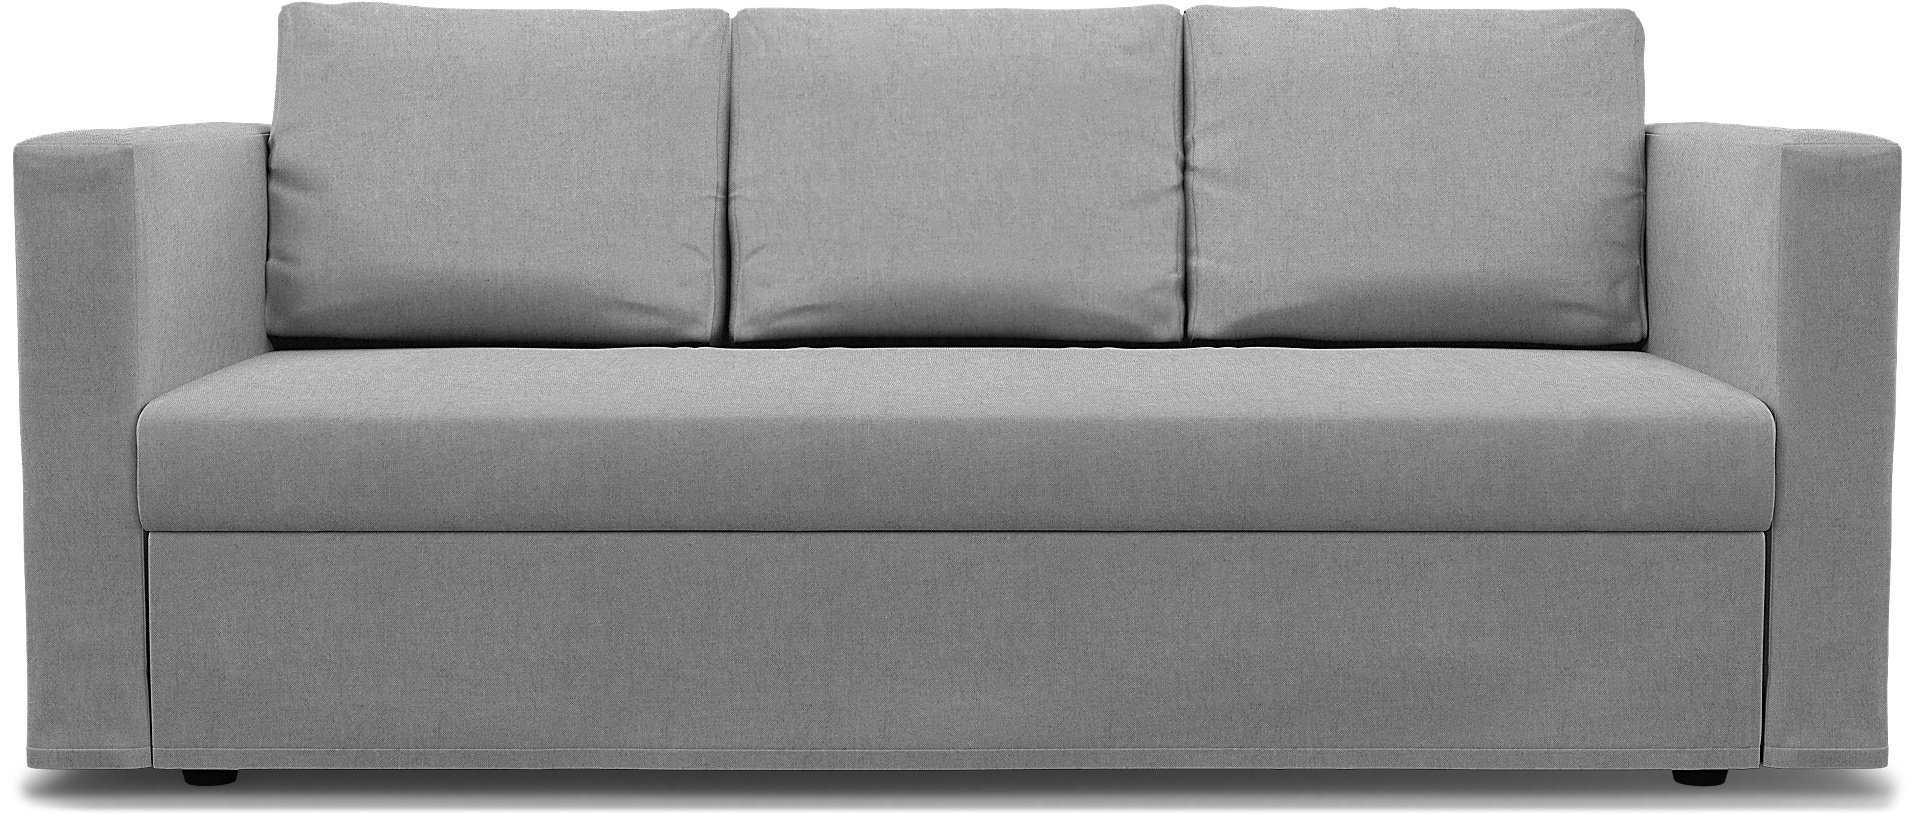 IKEA - Friheten 3 Seater Sofa Bed Cover, Graphite, Linen - Bemz